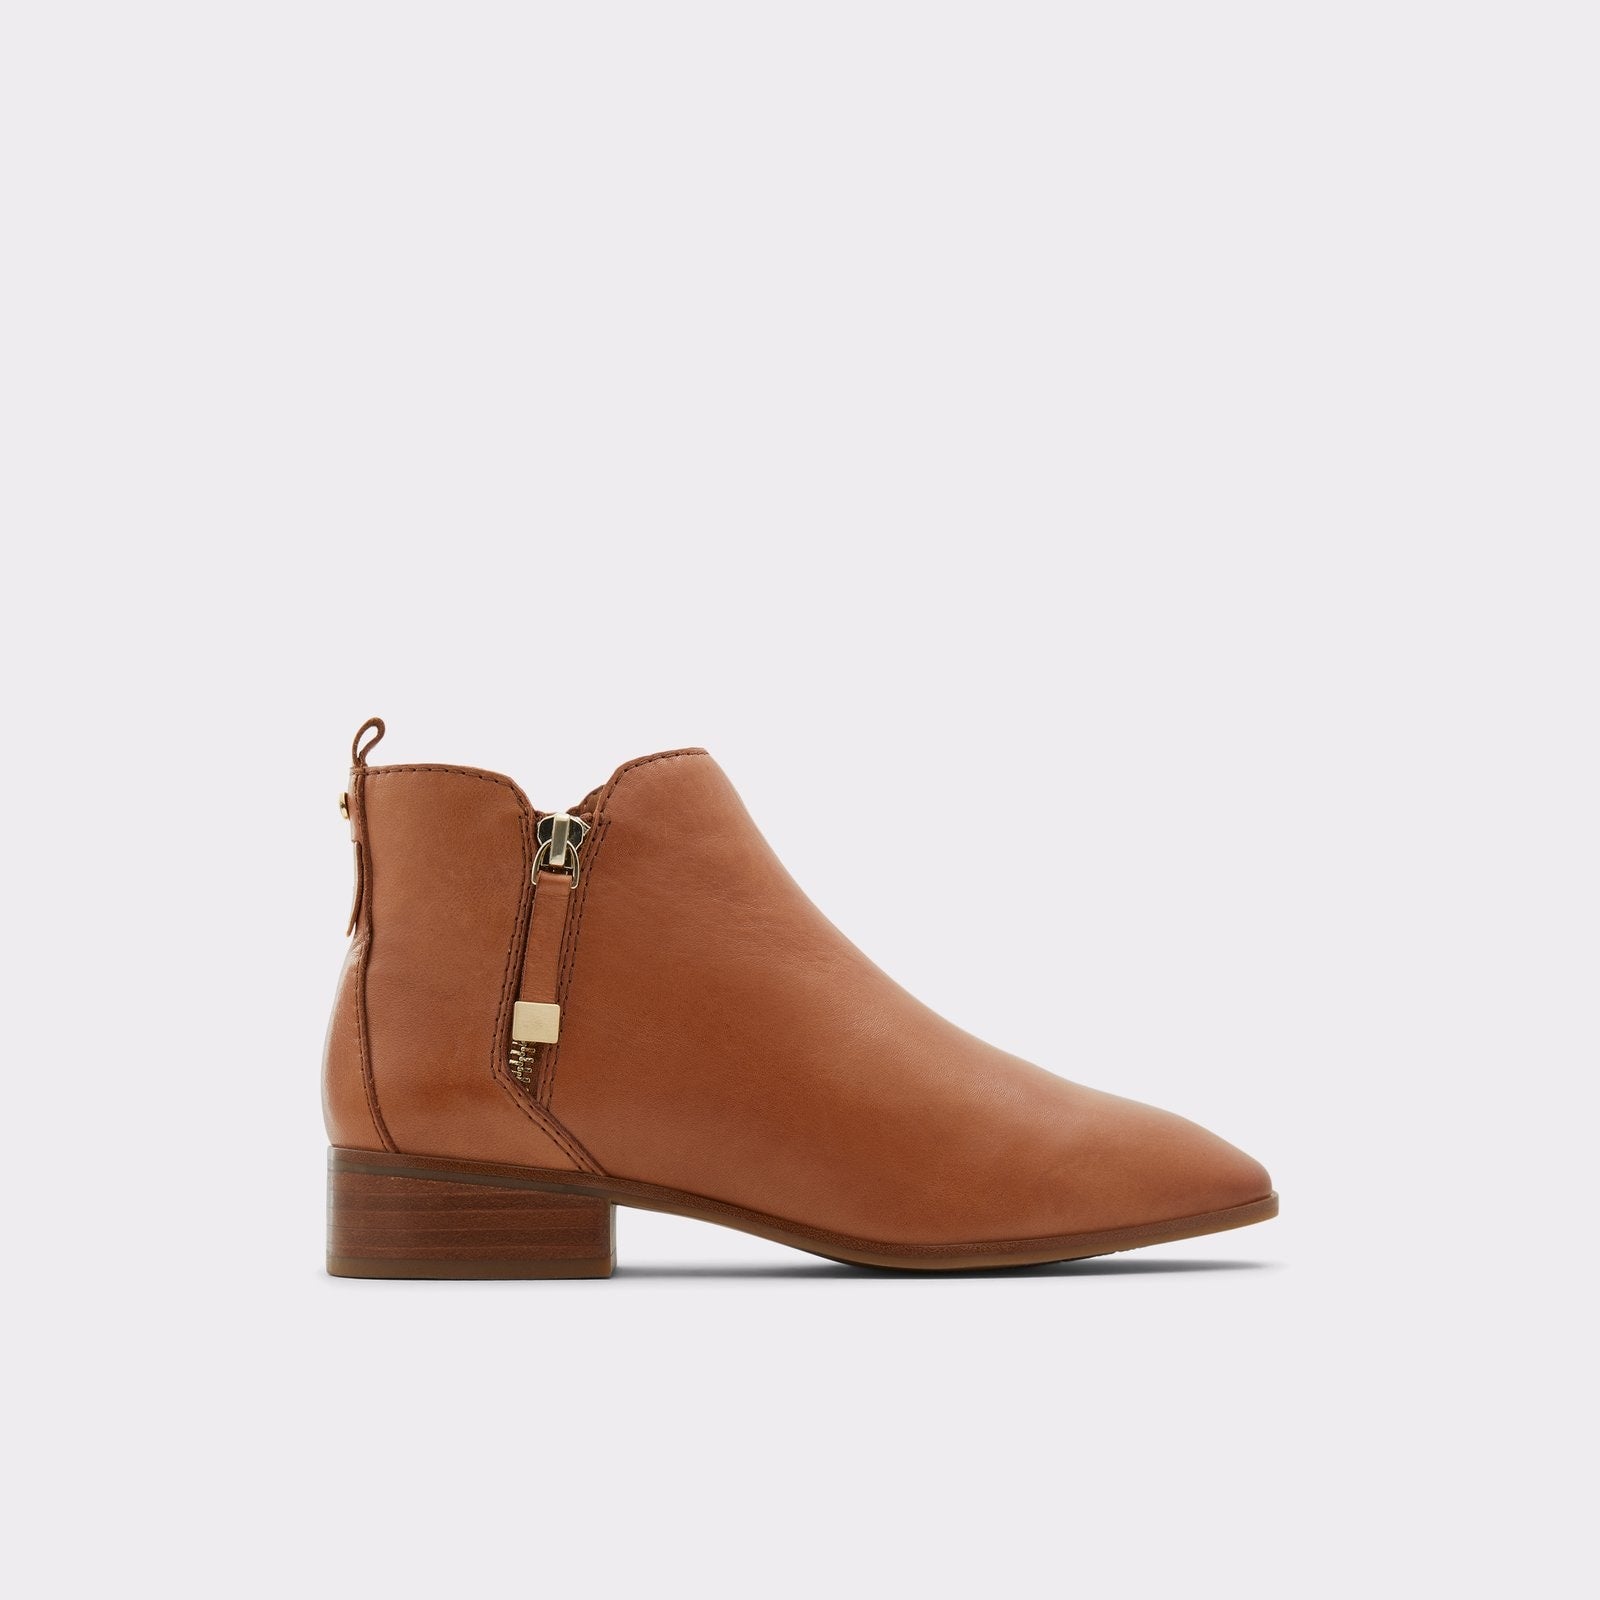 Aldo Women's Boots Kaelleflex (Cognac) – ALDO Shoes